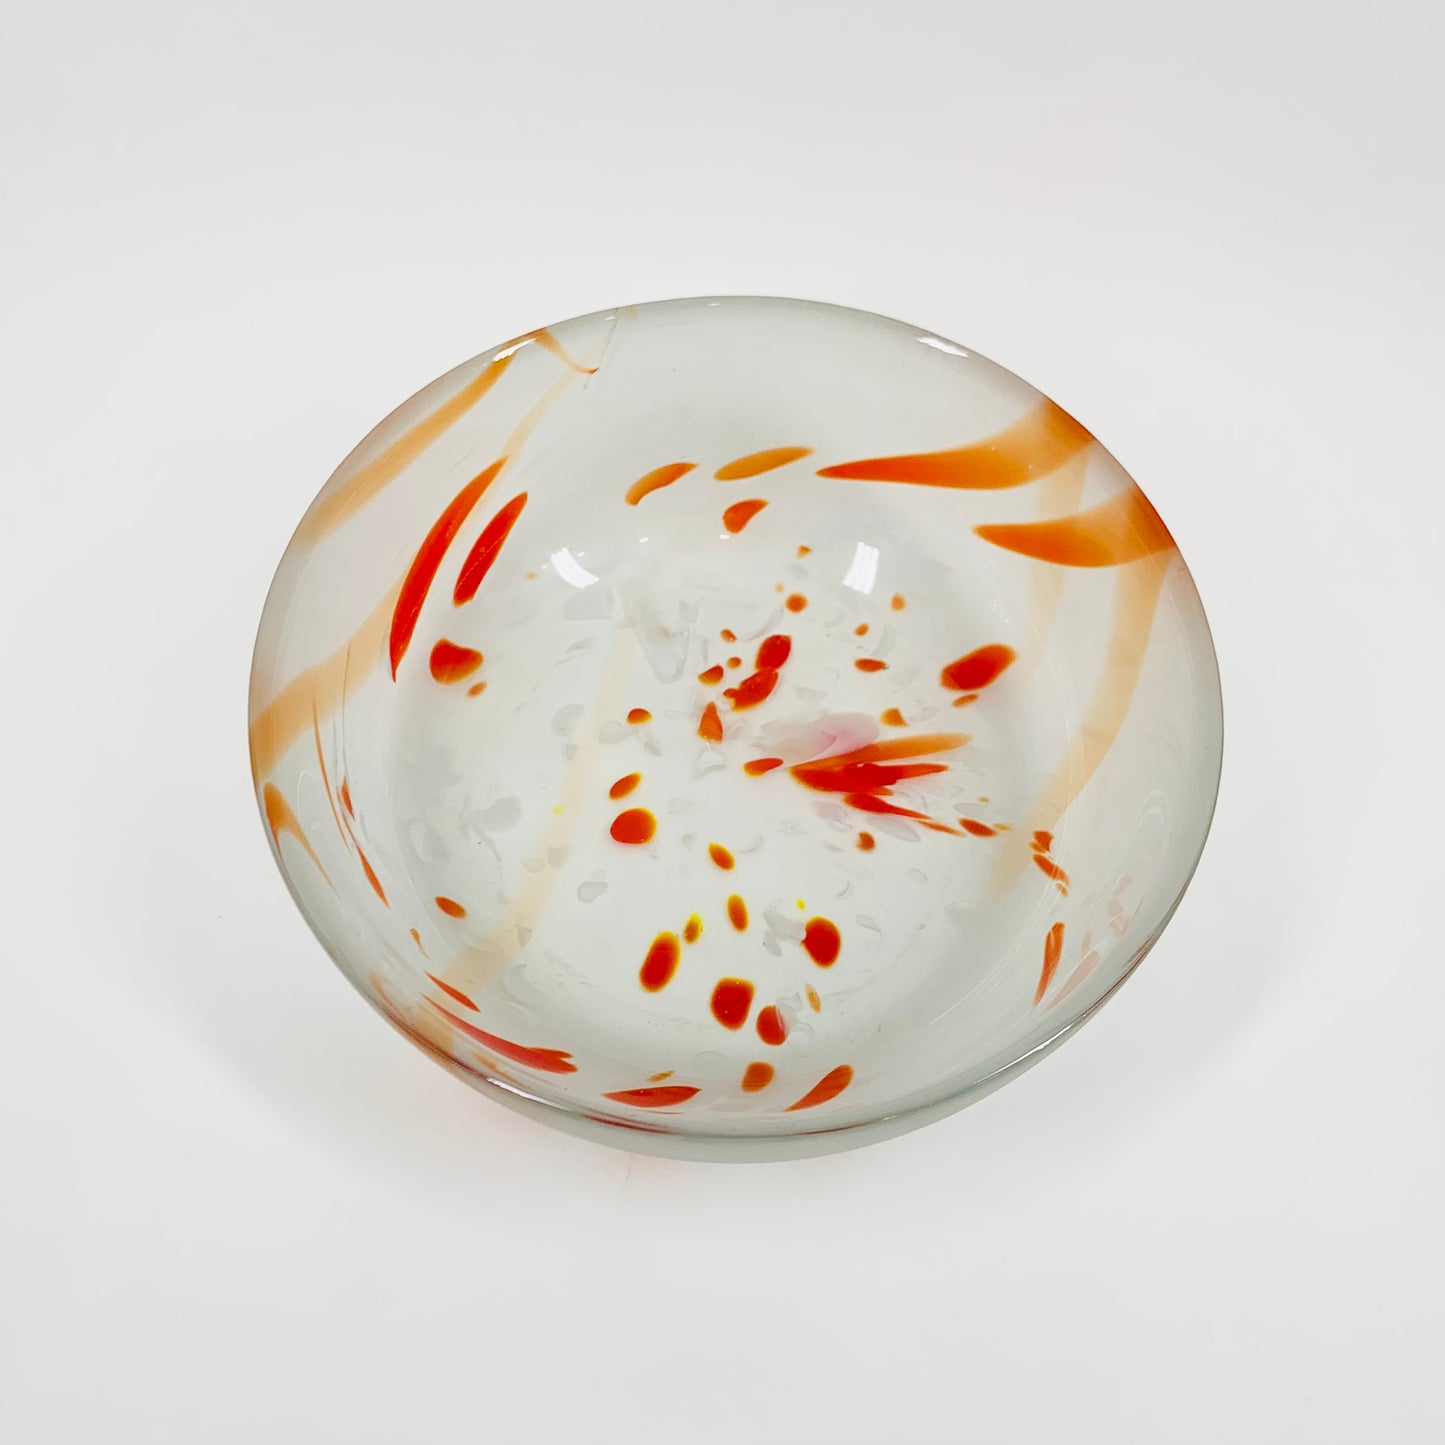 1980s orange speckled satin glass bowl